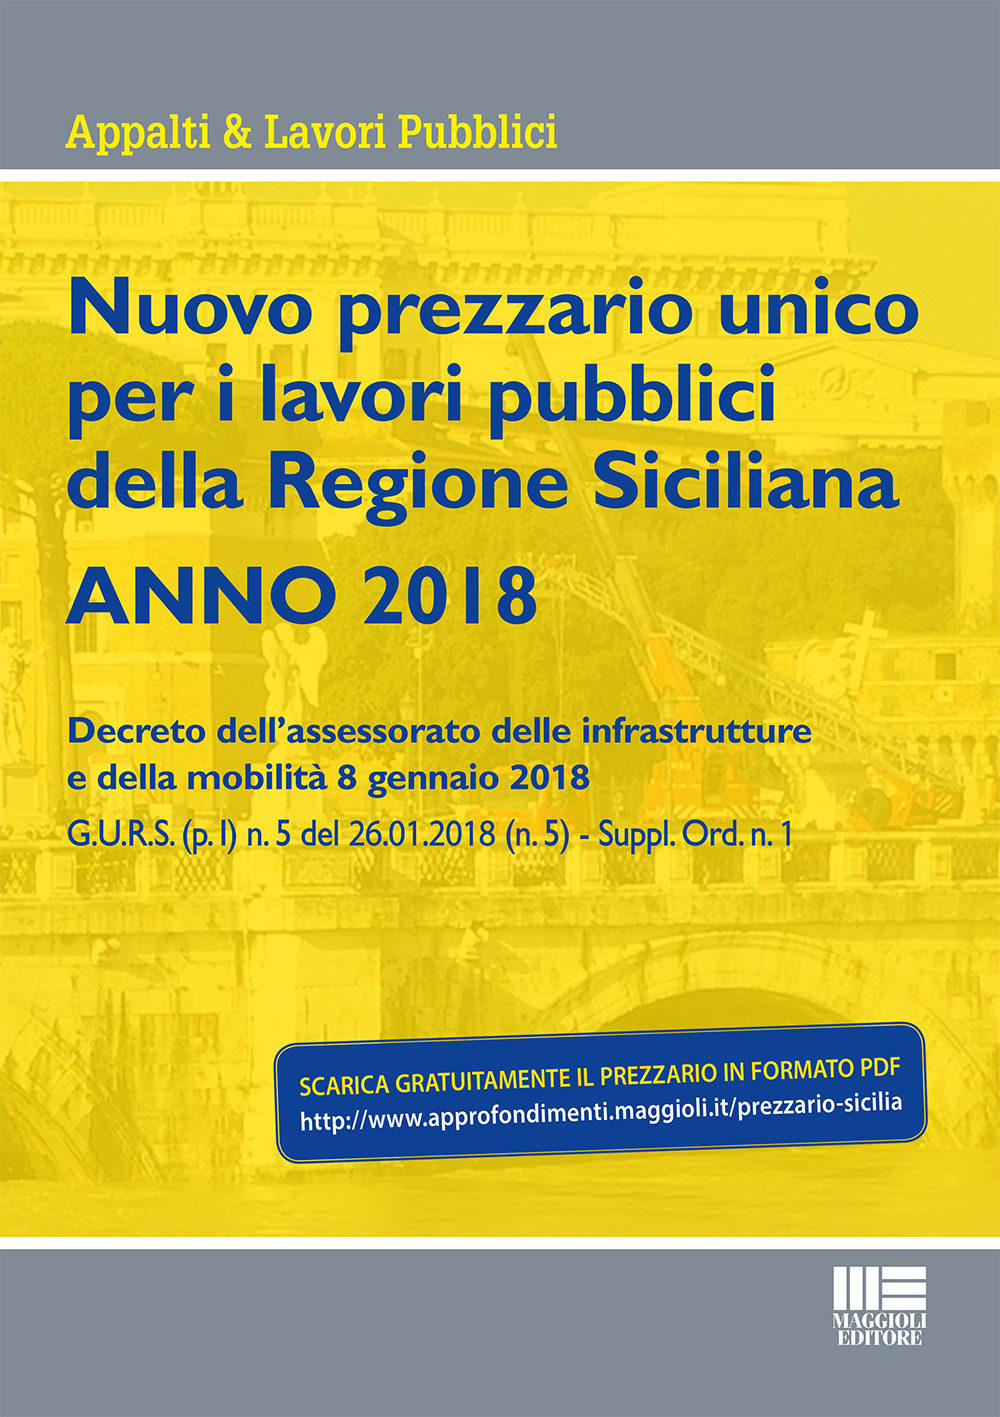 Image of Nuovo prezzario unico regionale per i lavori pubblici della Regione Sicilia 2018